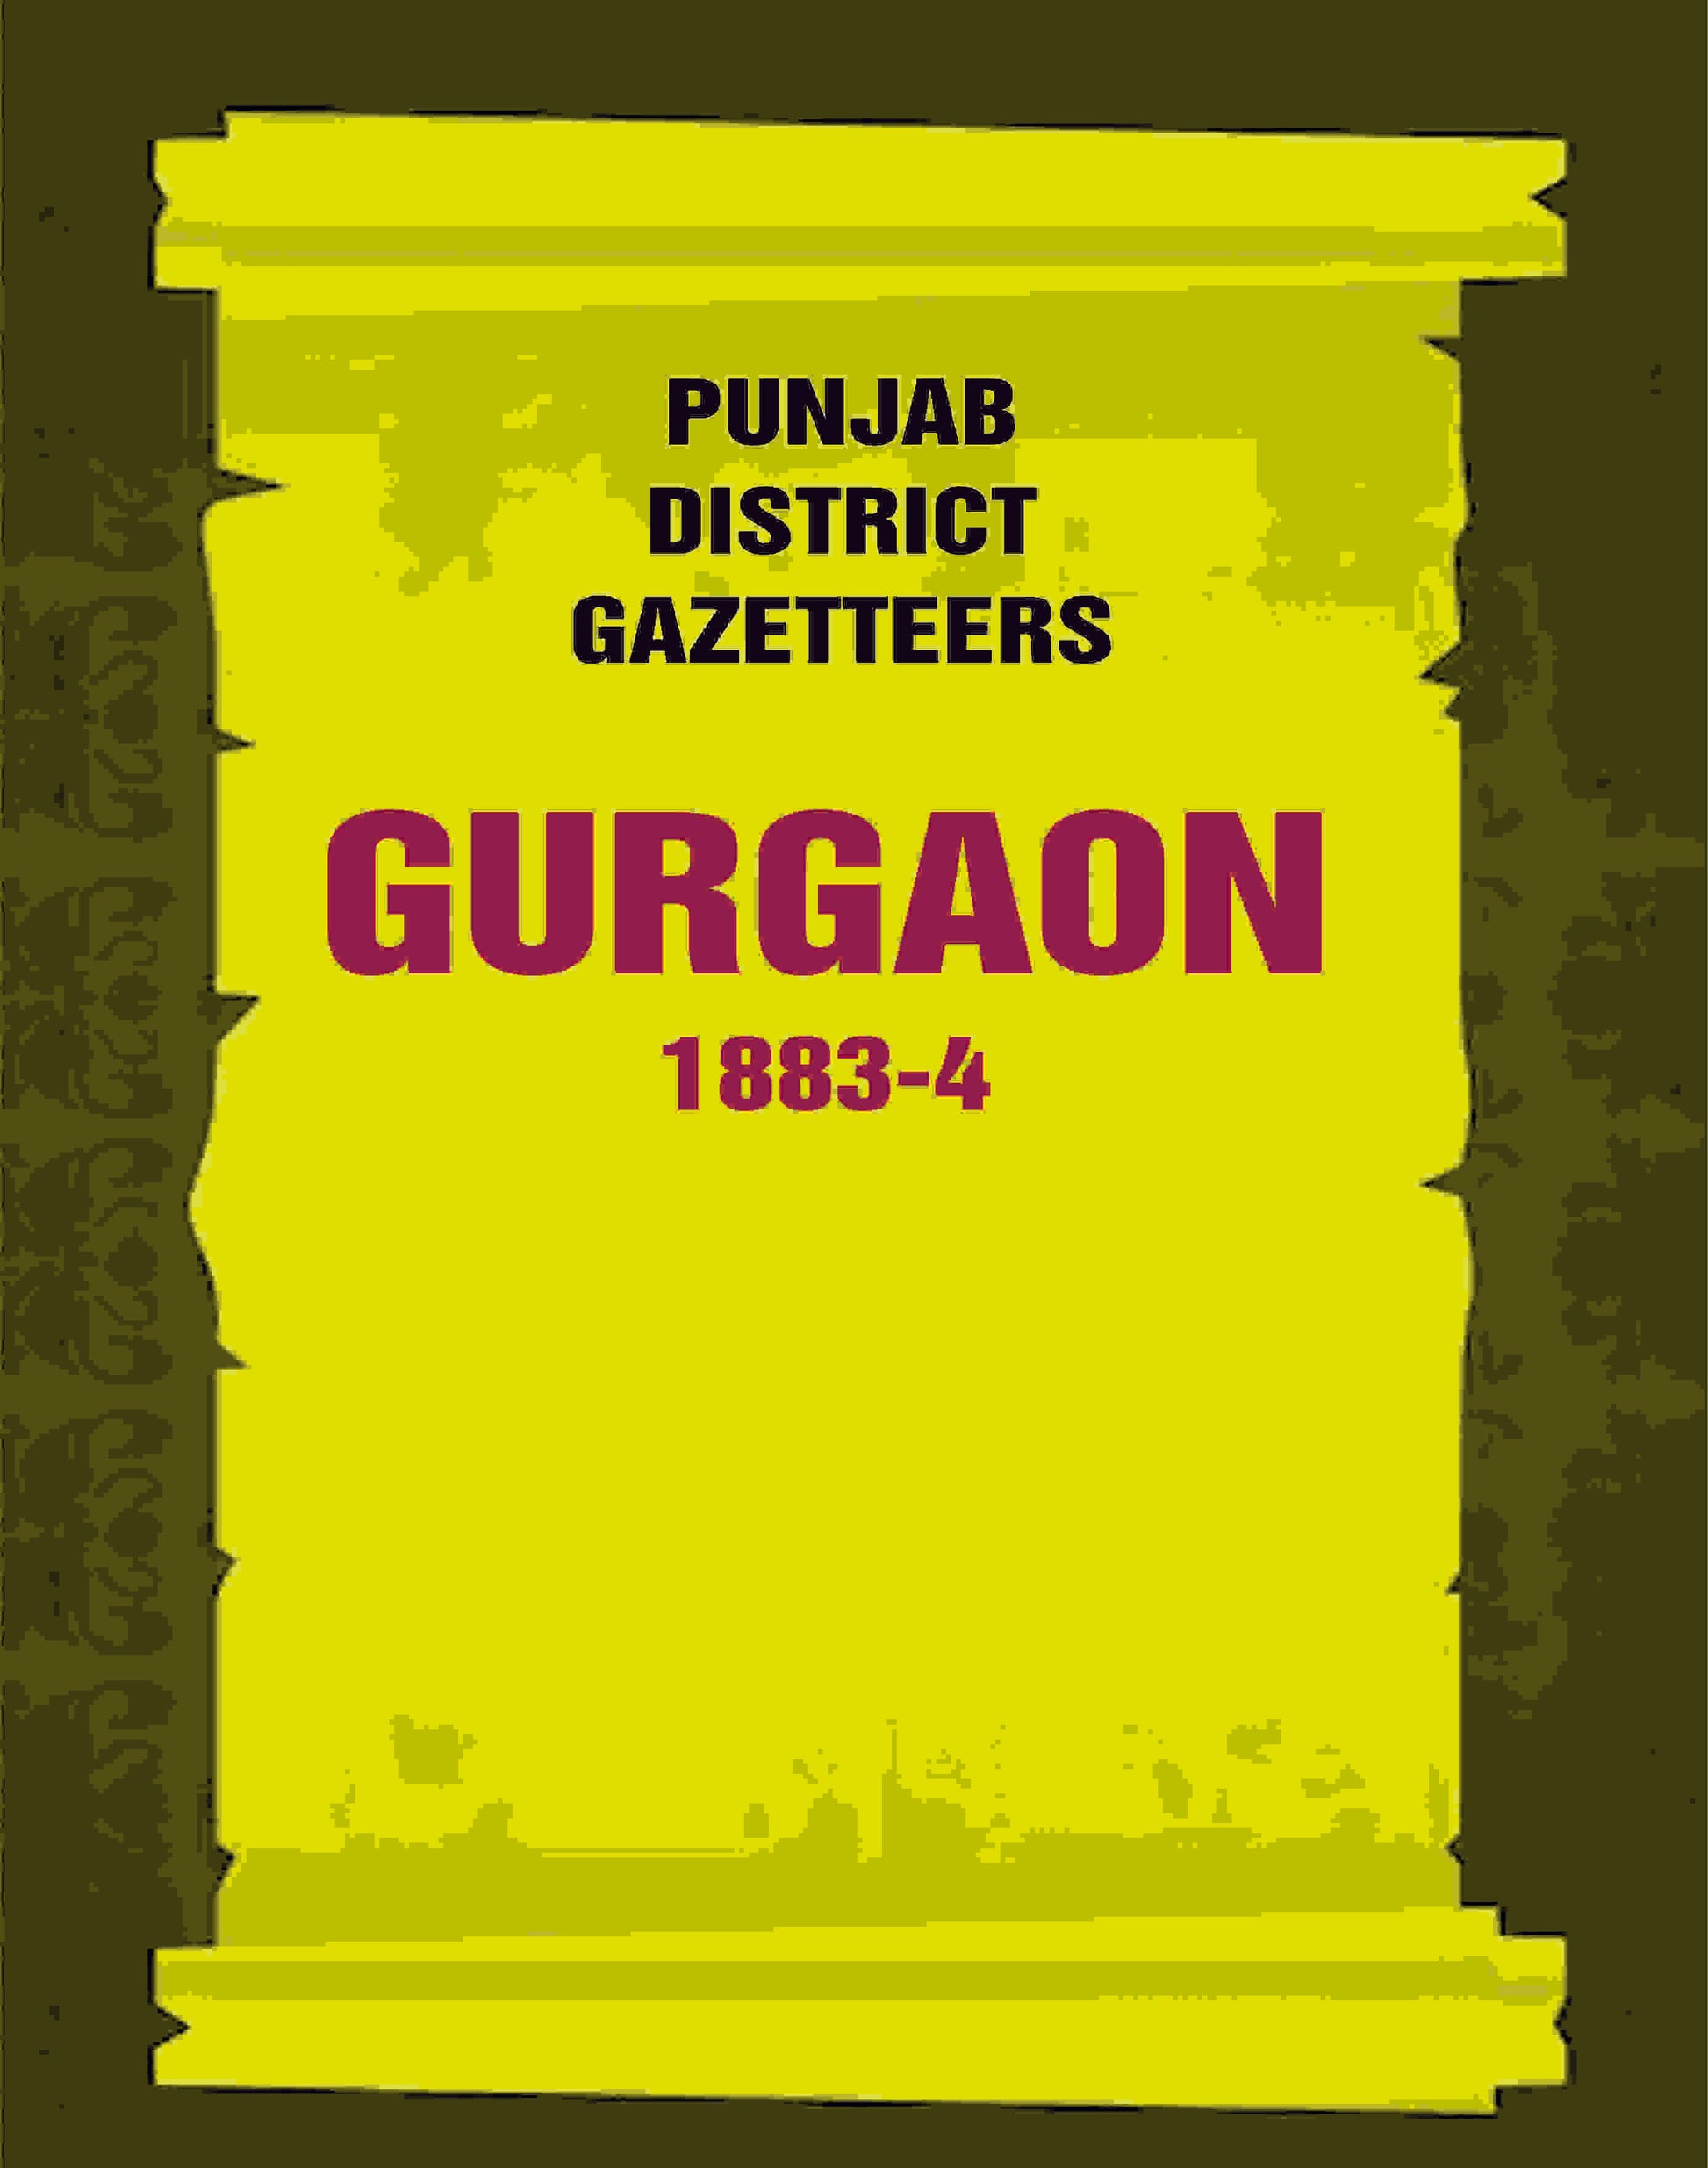 Punjab District Gazetteers: Gurgaon 1883-4